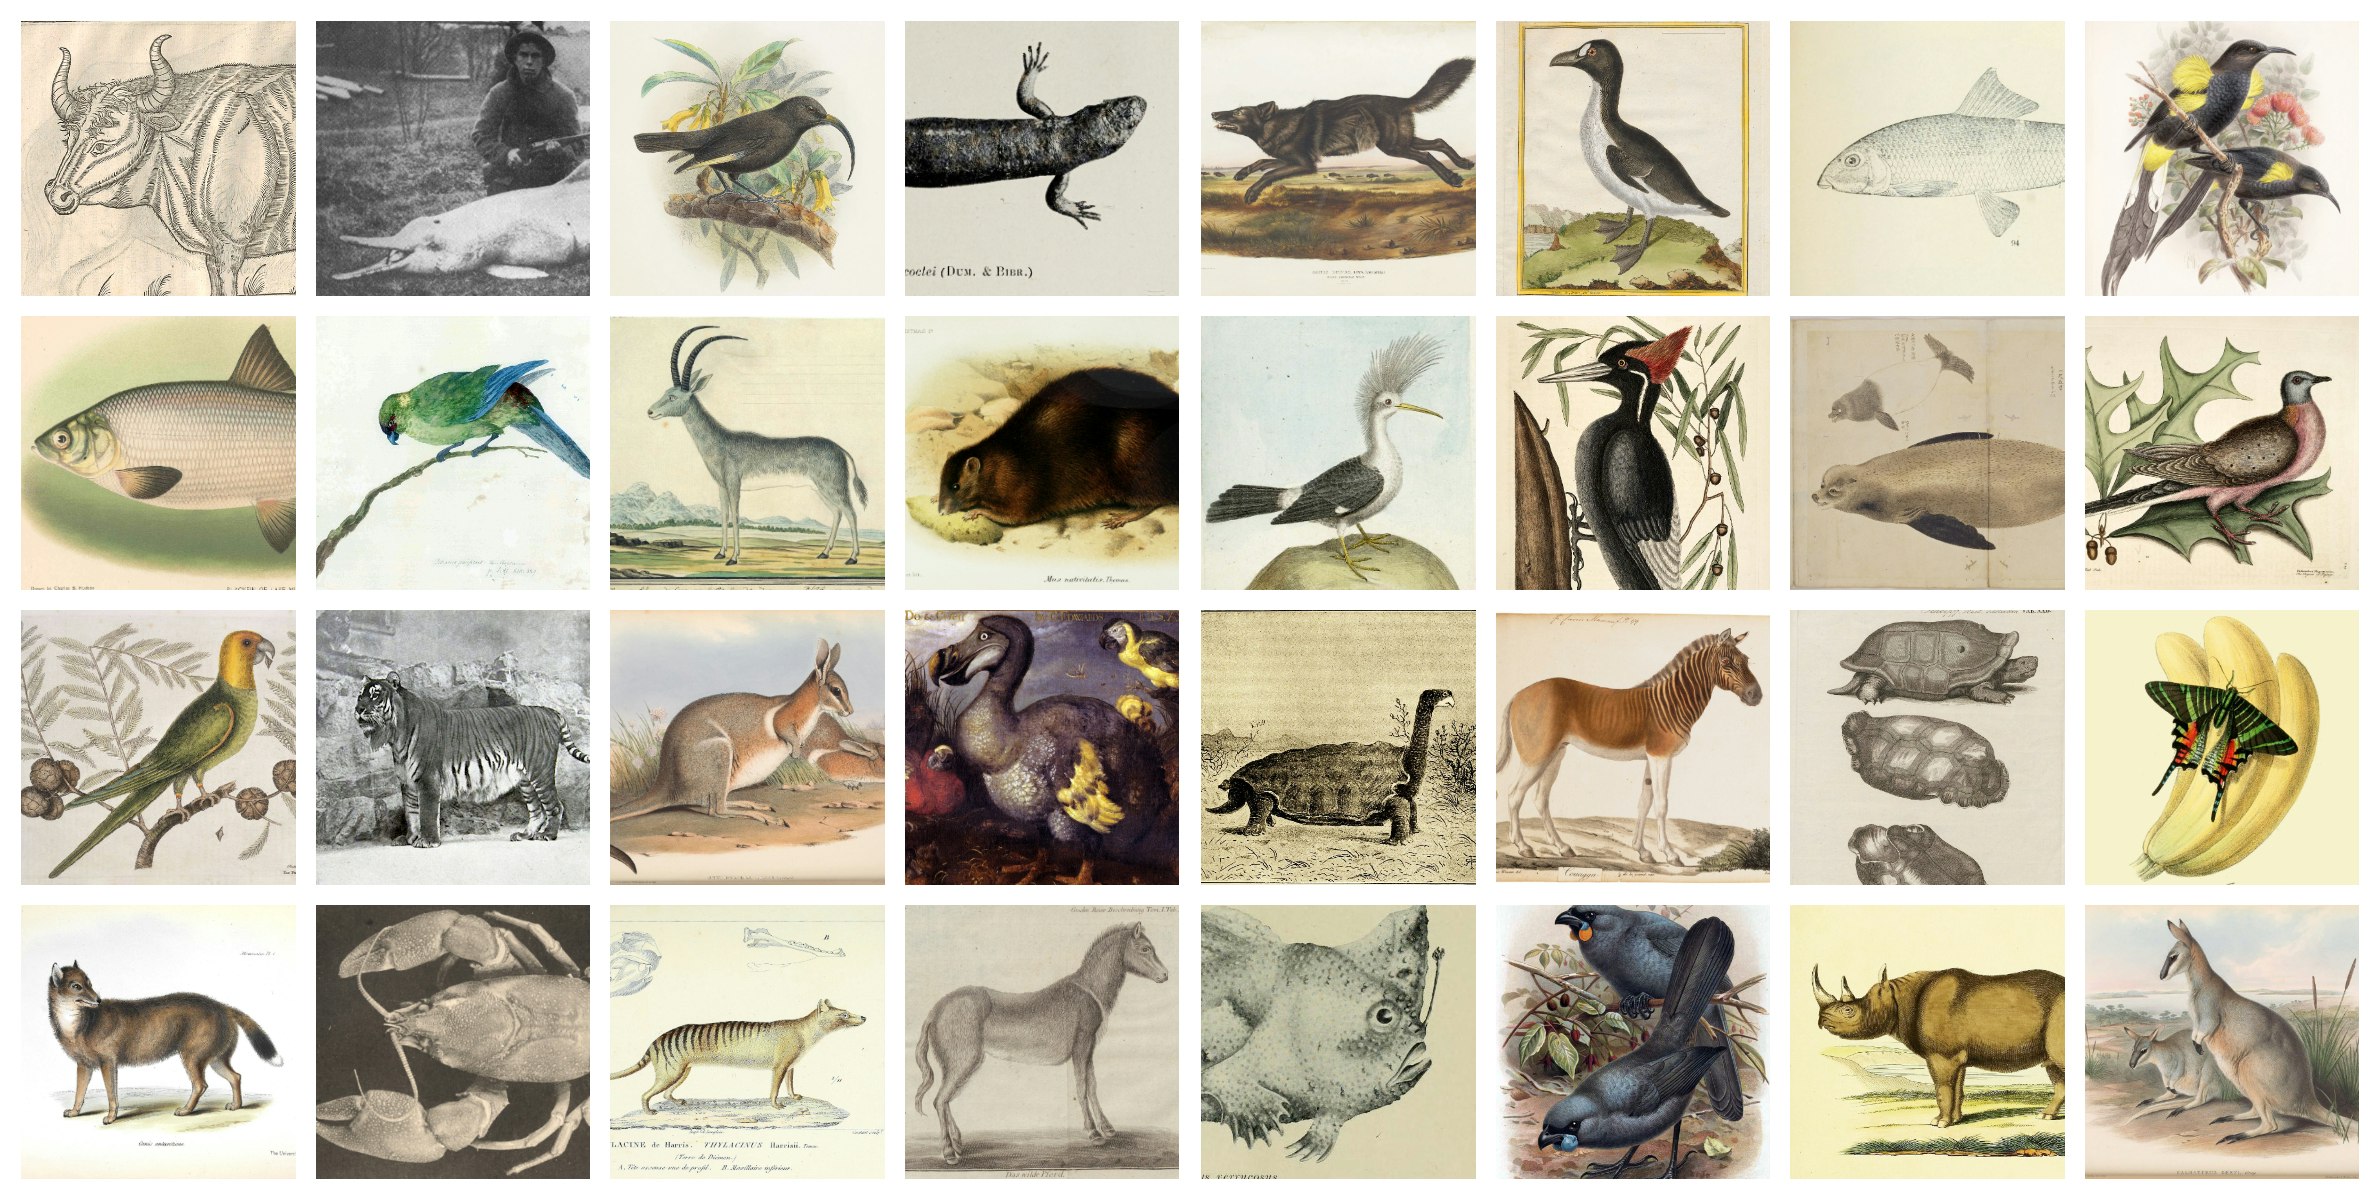 extinct animals list in the world